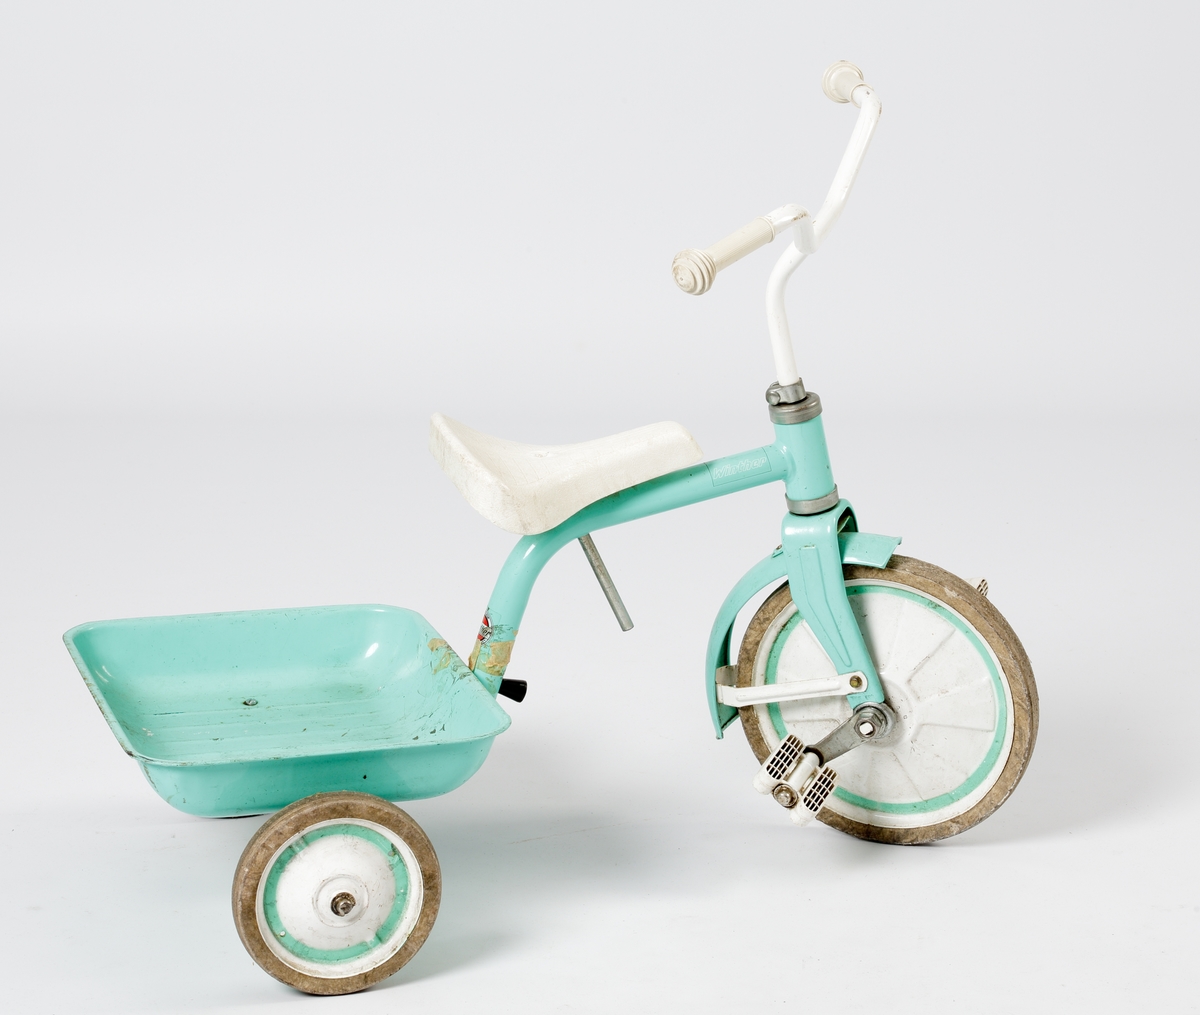 En trehjuling av stål med fällbart flak. Lackerad i mintgrönt med handtag, sits och pedaler m.m. i vit plast.